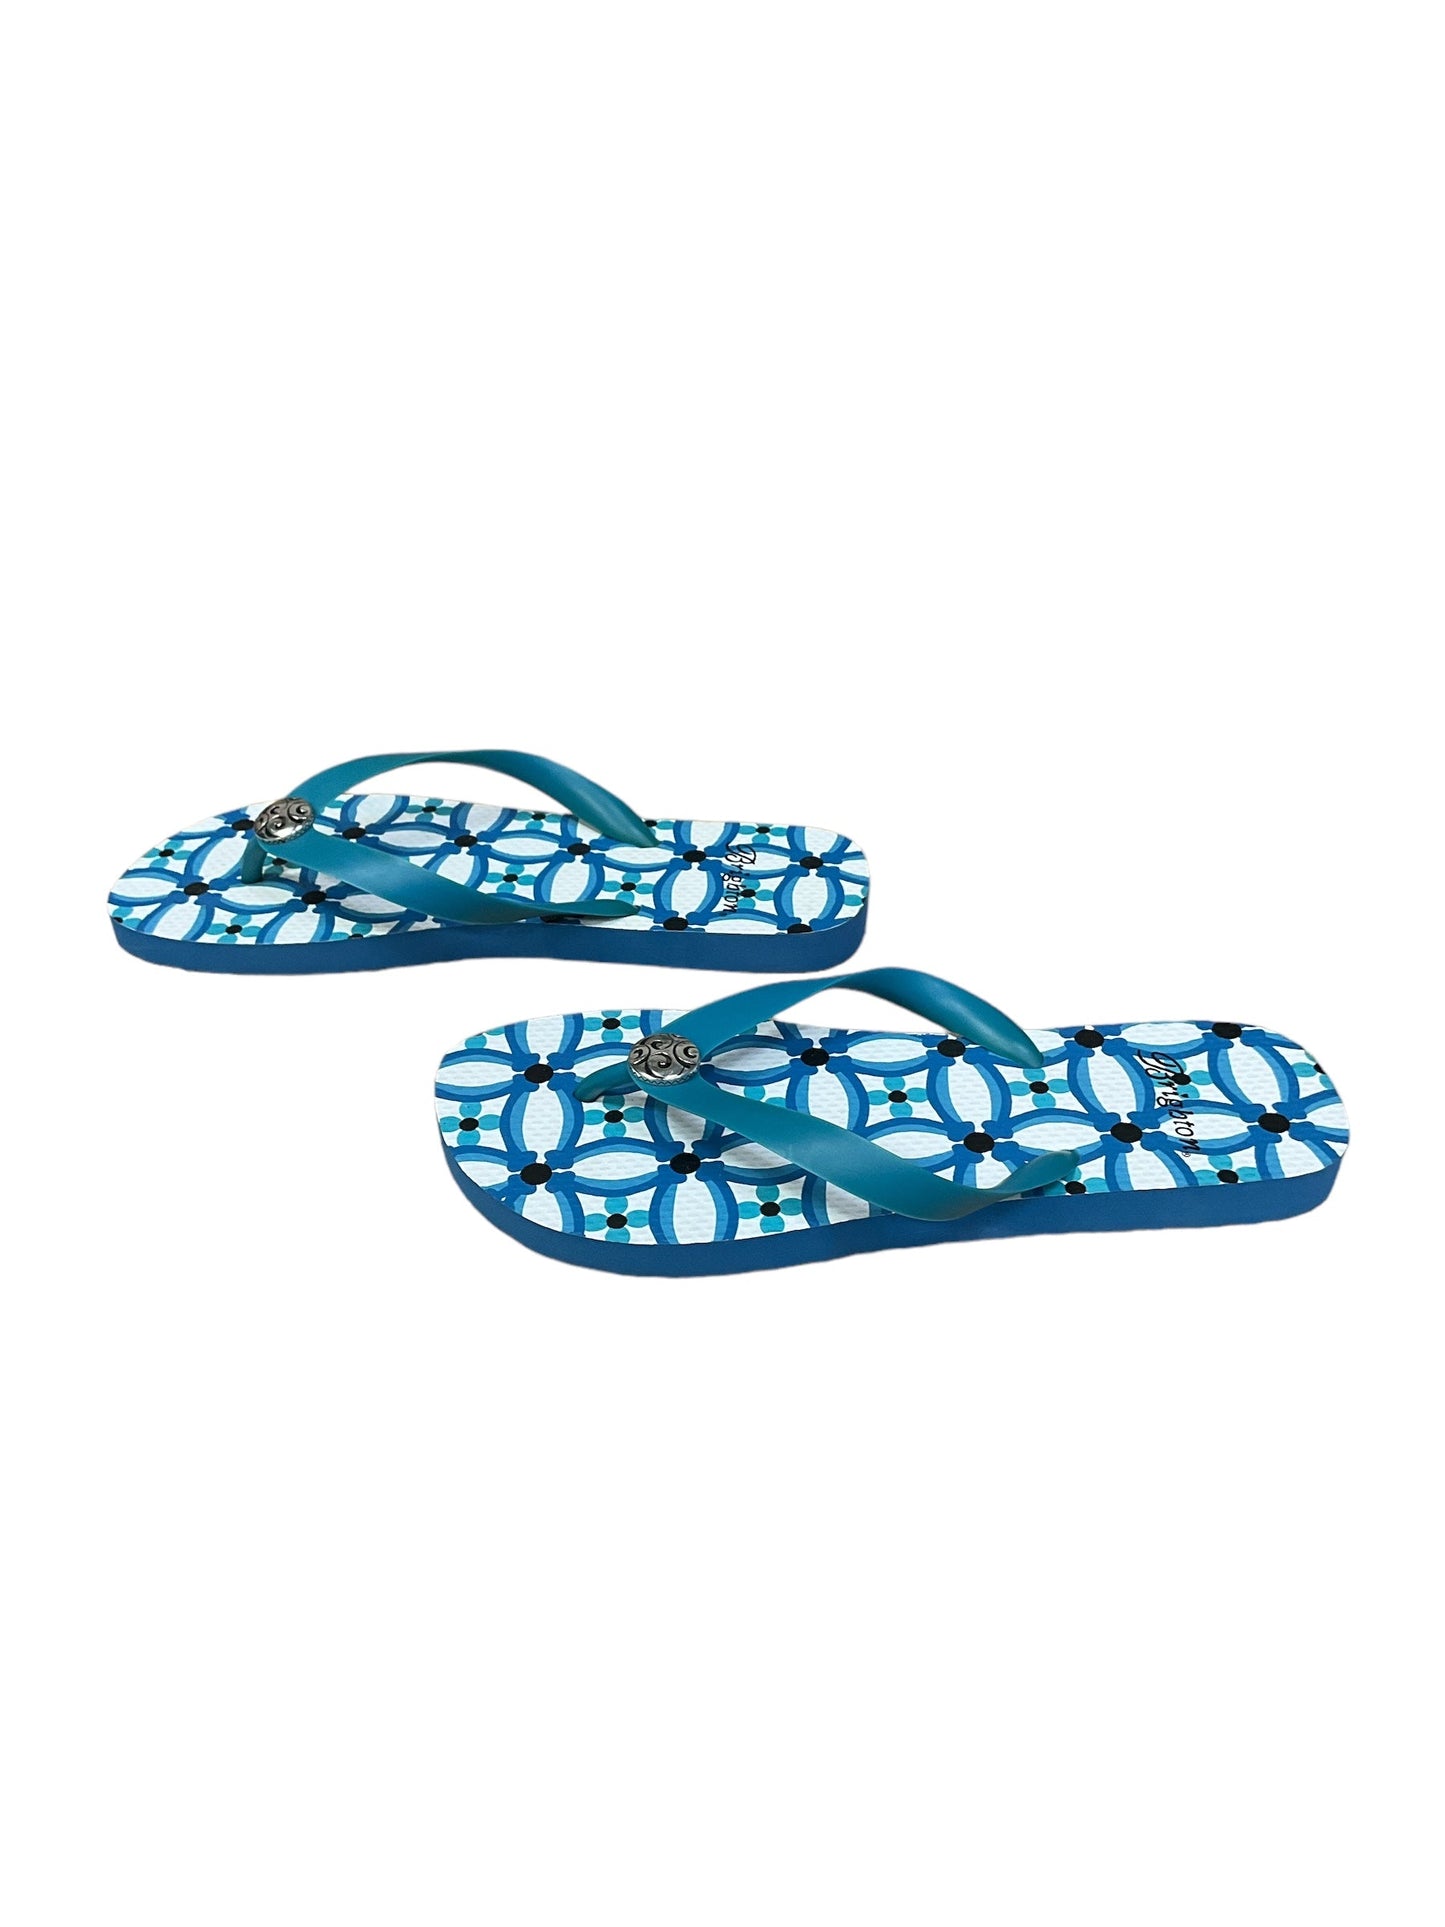 Blue Sandals Flip Flops Brighton, Size 9